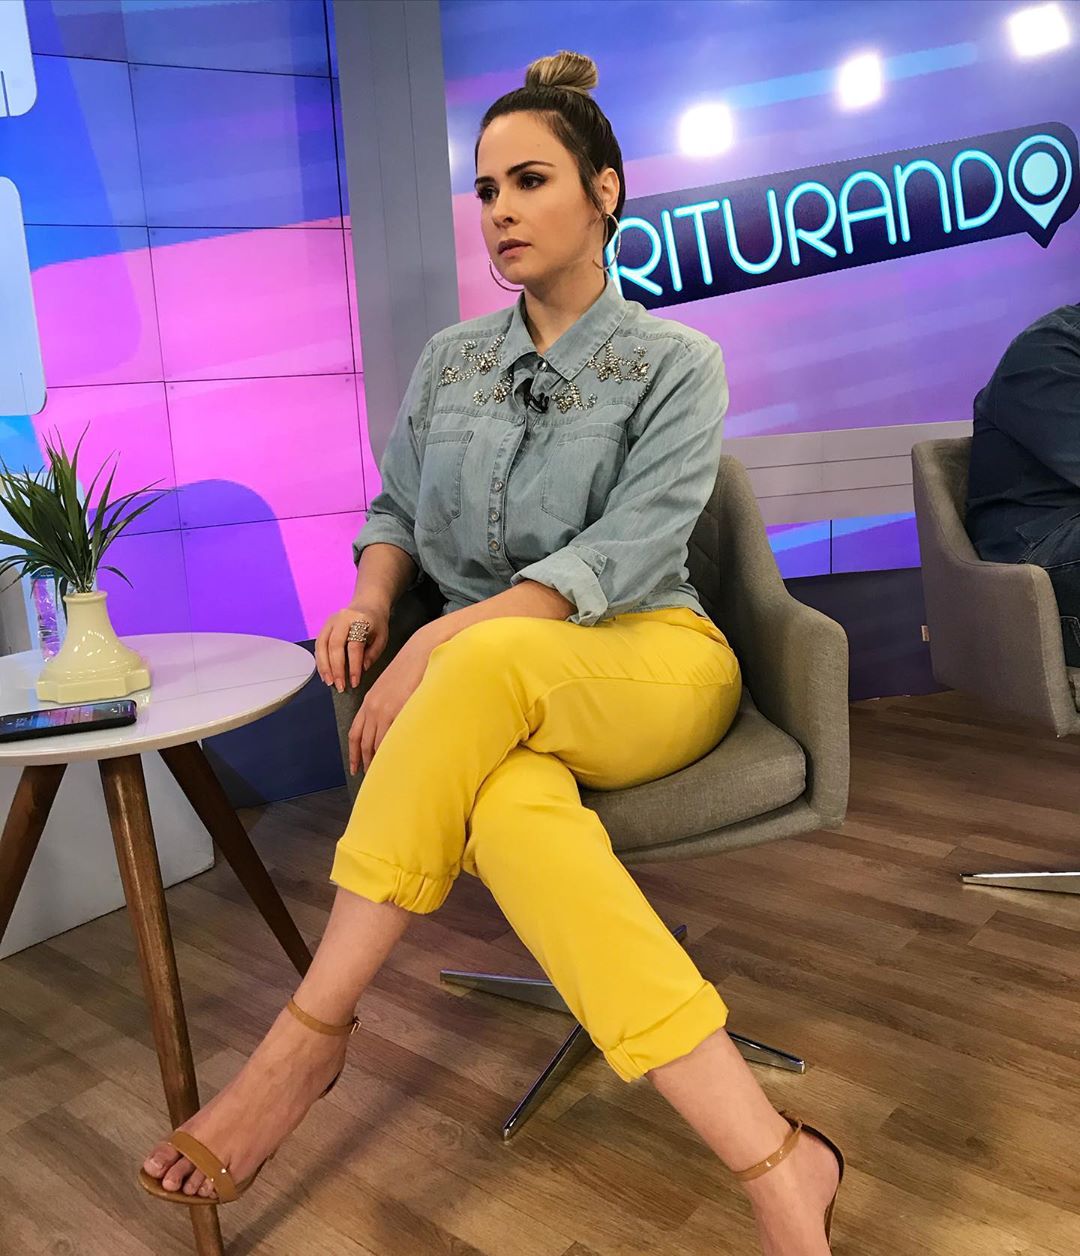 Segundo o site Notícias da TV, em 5 de abril deste ano a Justiça determinou que Ana Paula Renault pague R$ 32.919,81 para a apresentadora do “A Tarde É Sua